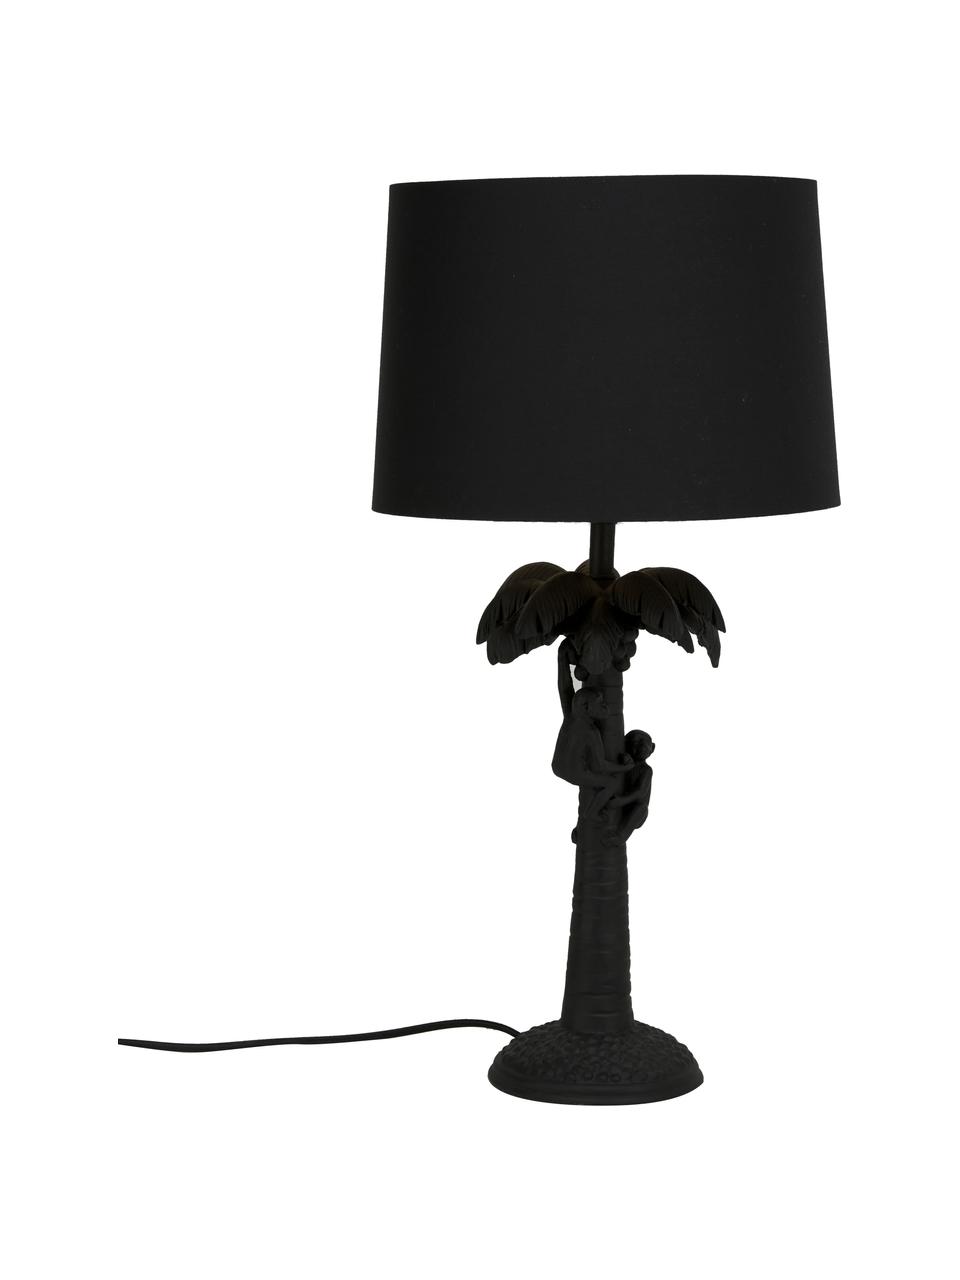 Große Boho-Tischlampe Coconut in Schwarz, Lampenschirm: Baumwolle, Lampenfuß: Kunststoff, Schwarz, Ø 31 x H 58 cm